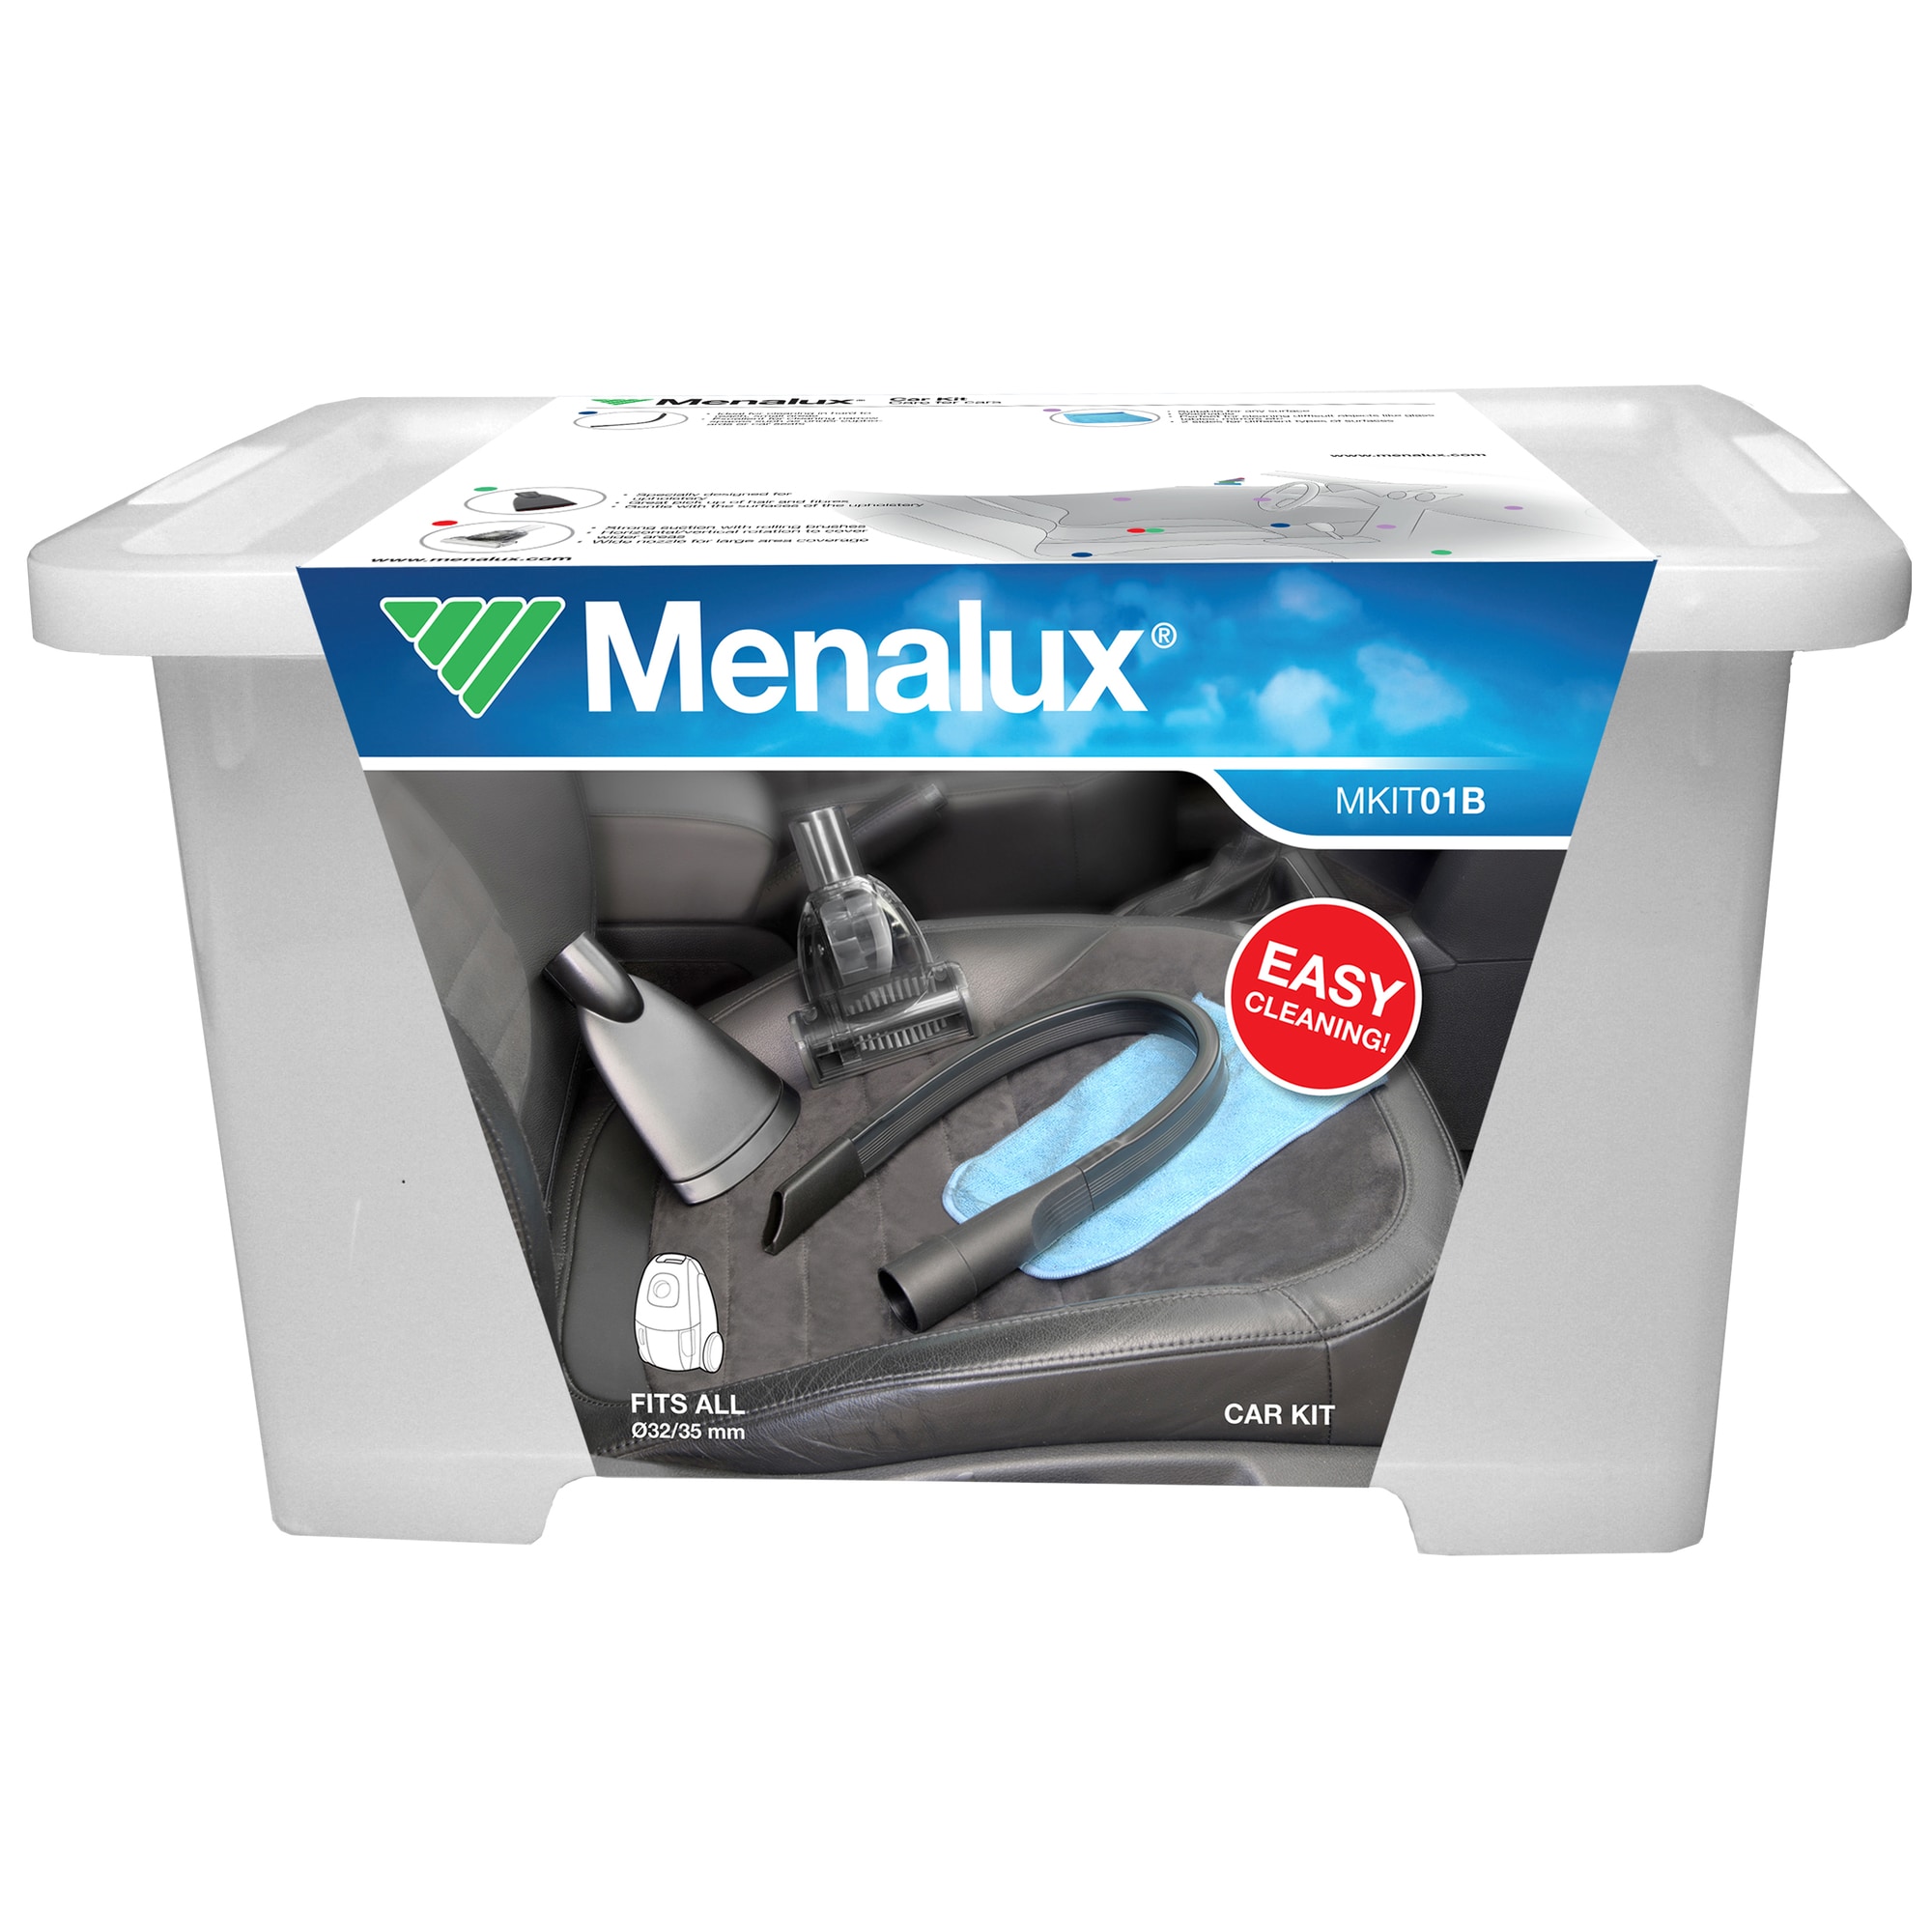 Menalux Auto Care støvsugersett til bil MKIT01B - Elkjøp